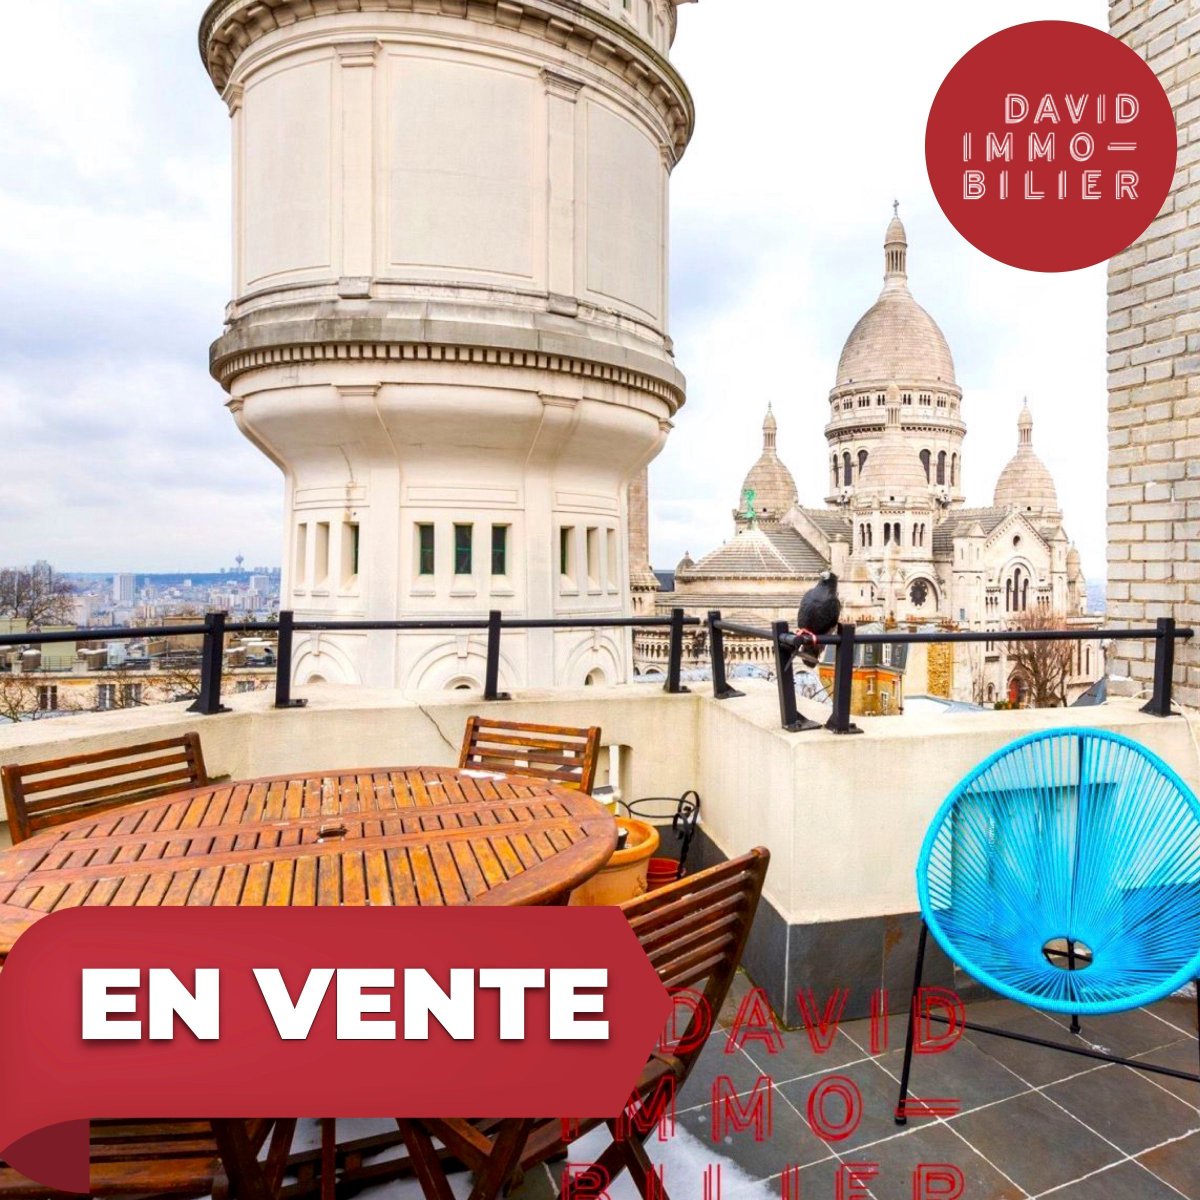 Paris 18ème Butte Montmartre. Appartement 3 pièces de 73 m² au 6è étage avec ascenseur, et balcon avec vue panoramique sur sacré coeur. #Avendre #DavidImmo #Paris #Immobilier